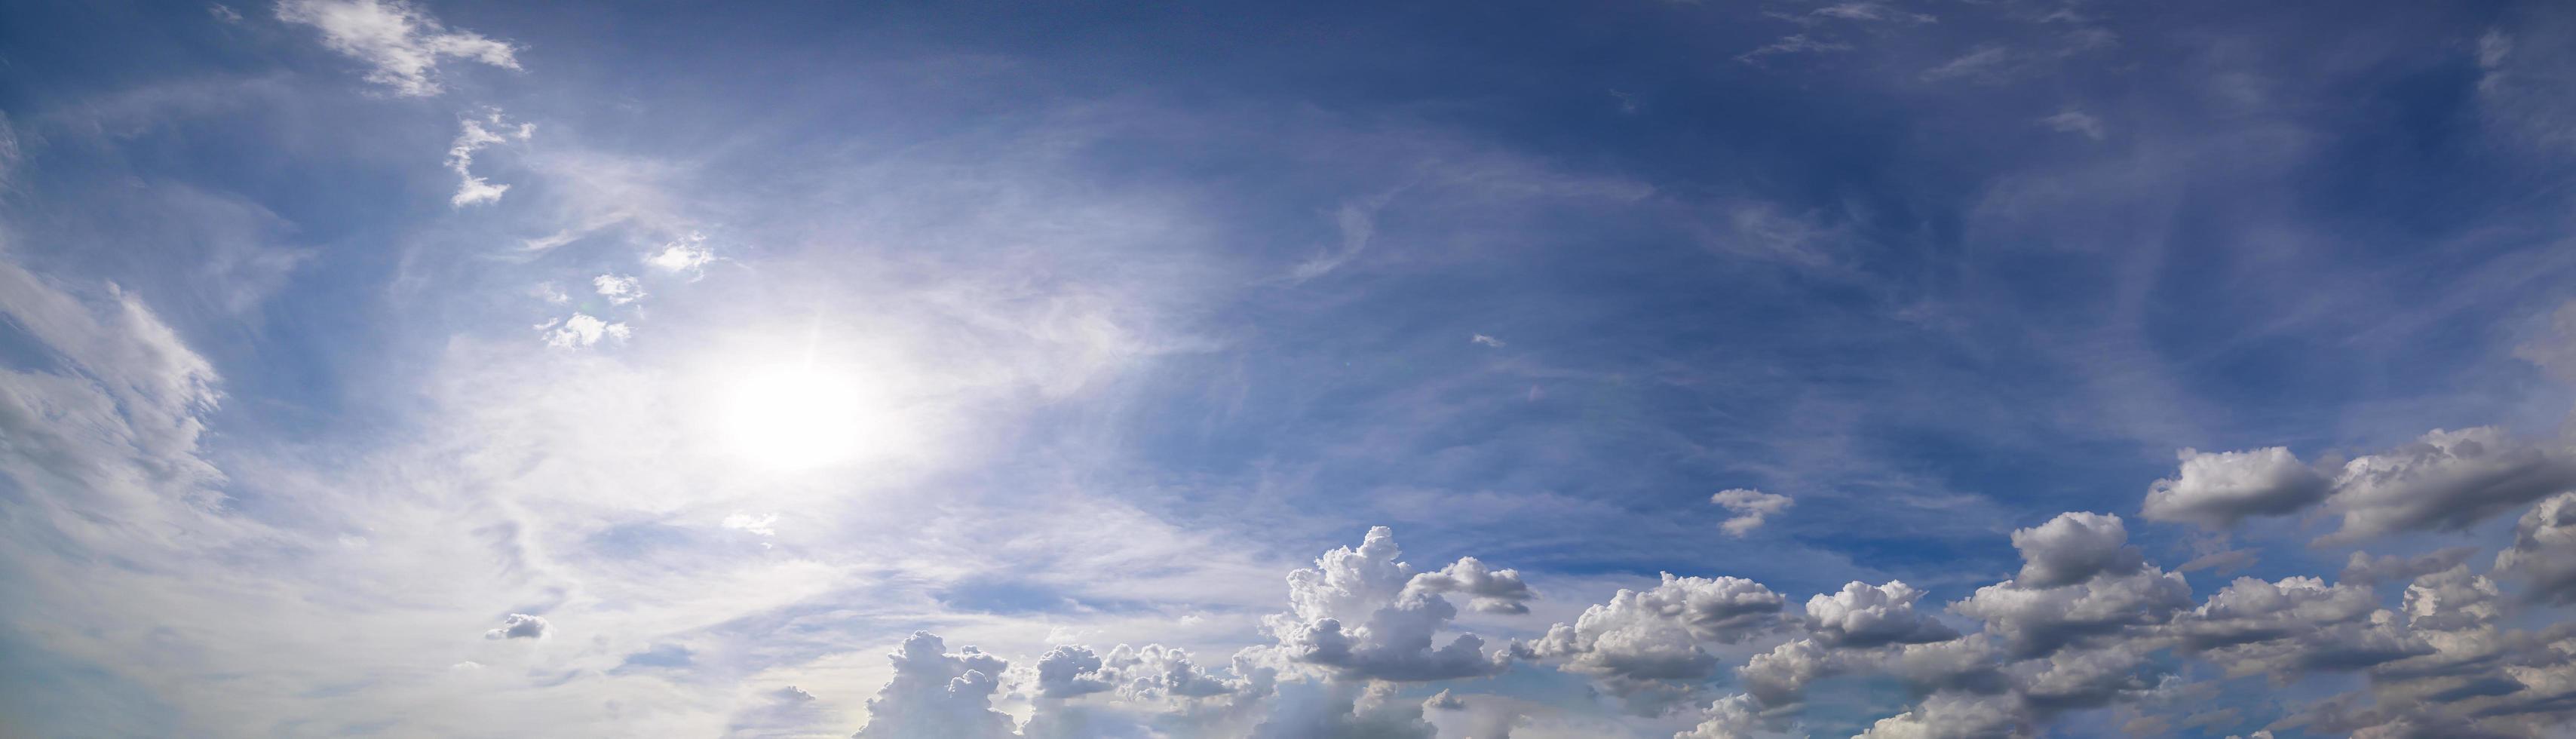 panorama, céu e nuvens durante o dia foto